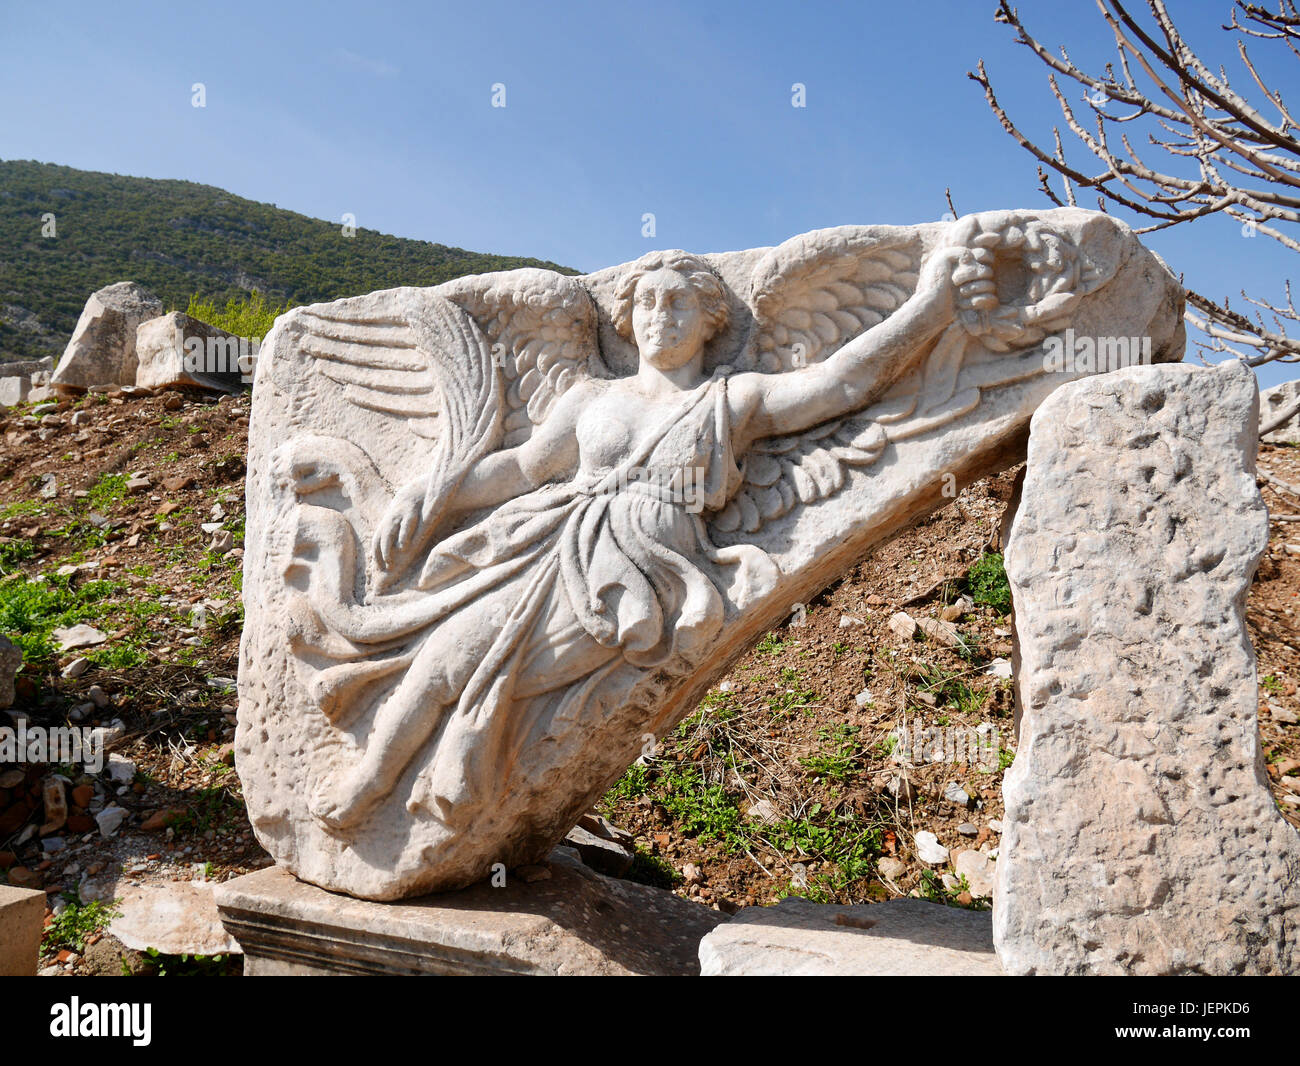 Marmorstatue von Nike, der Göttin des Sieges, in Ephesus, Türkei  Stockfotografie - Alamy